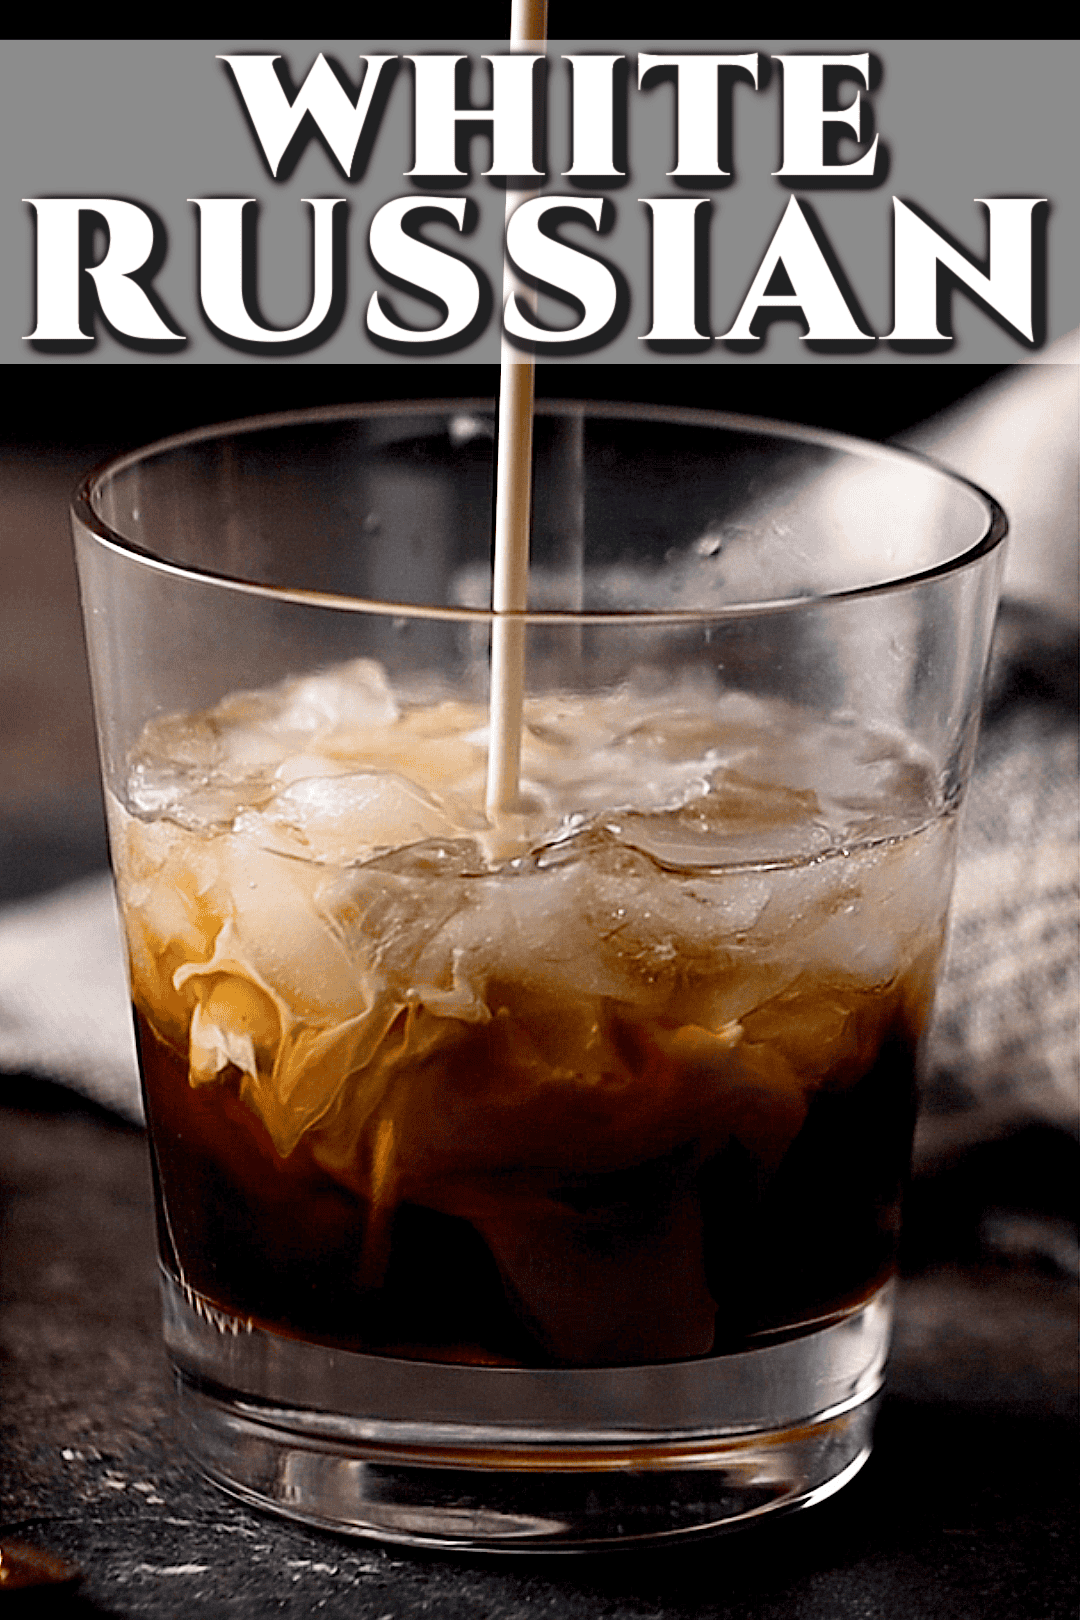 Pouring cream into a white Russian recipe.